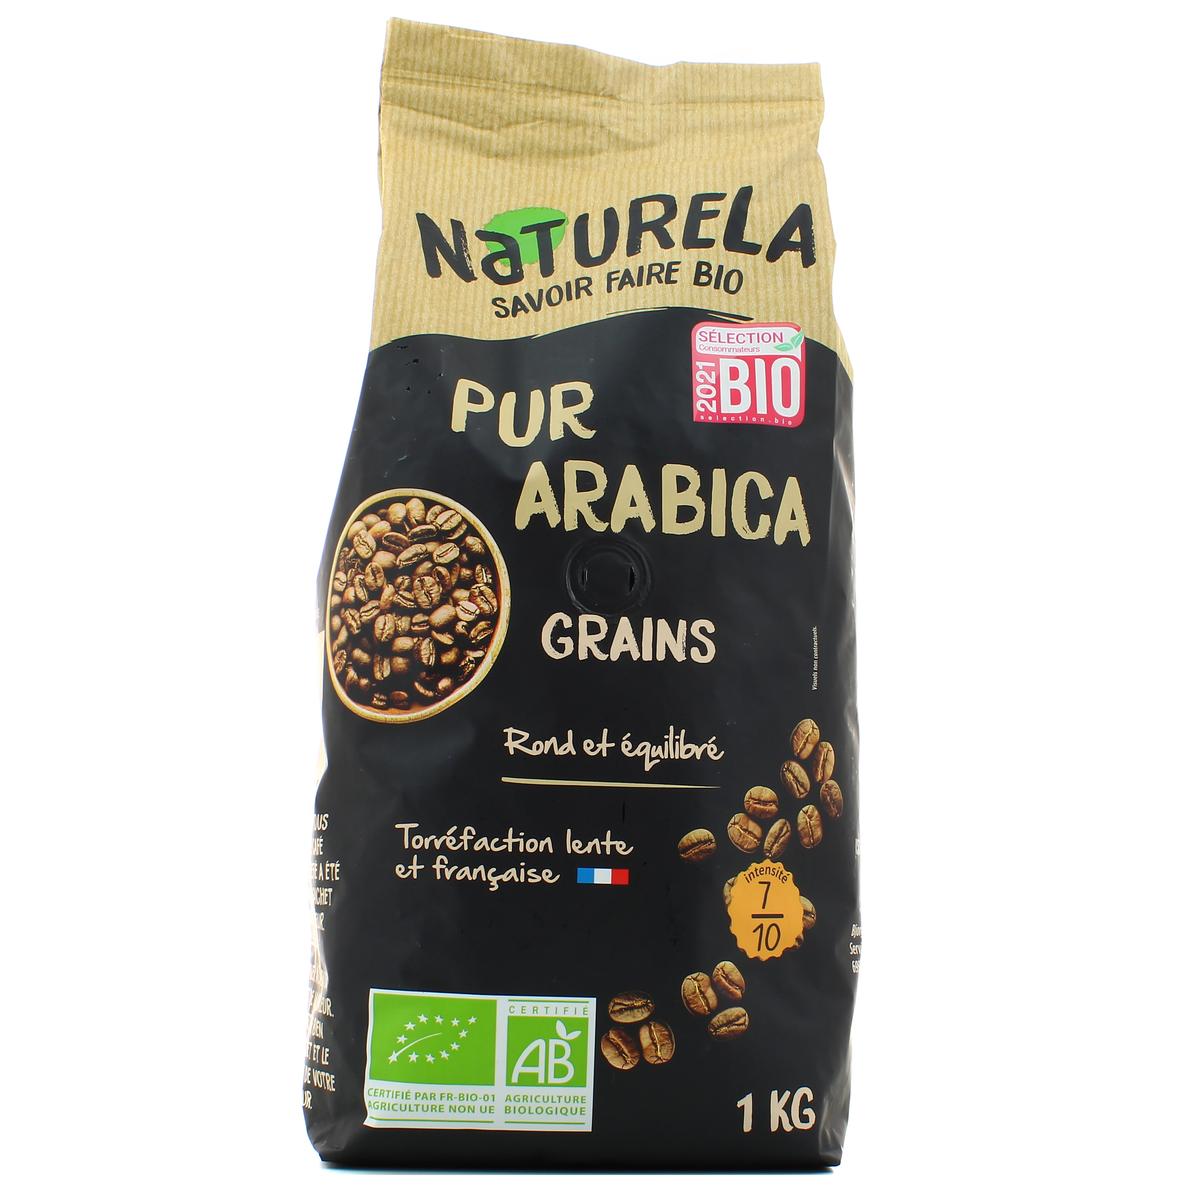 Café grains pur arabica intensité 7 1kg, Café